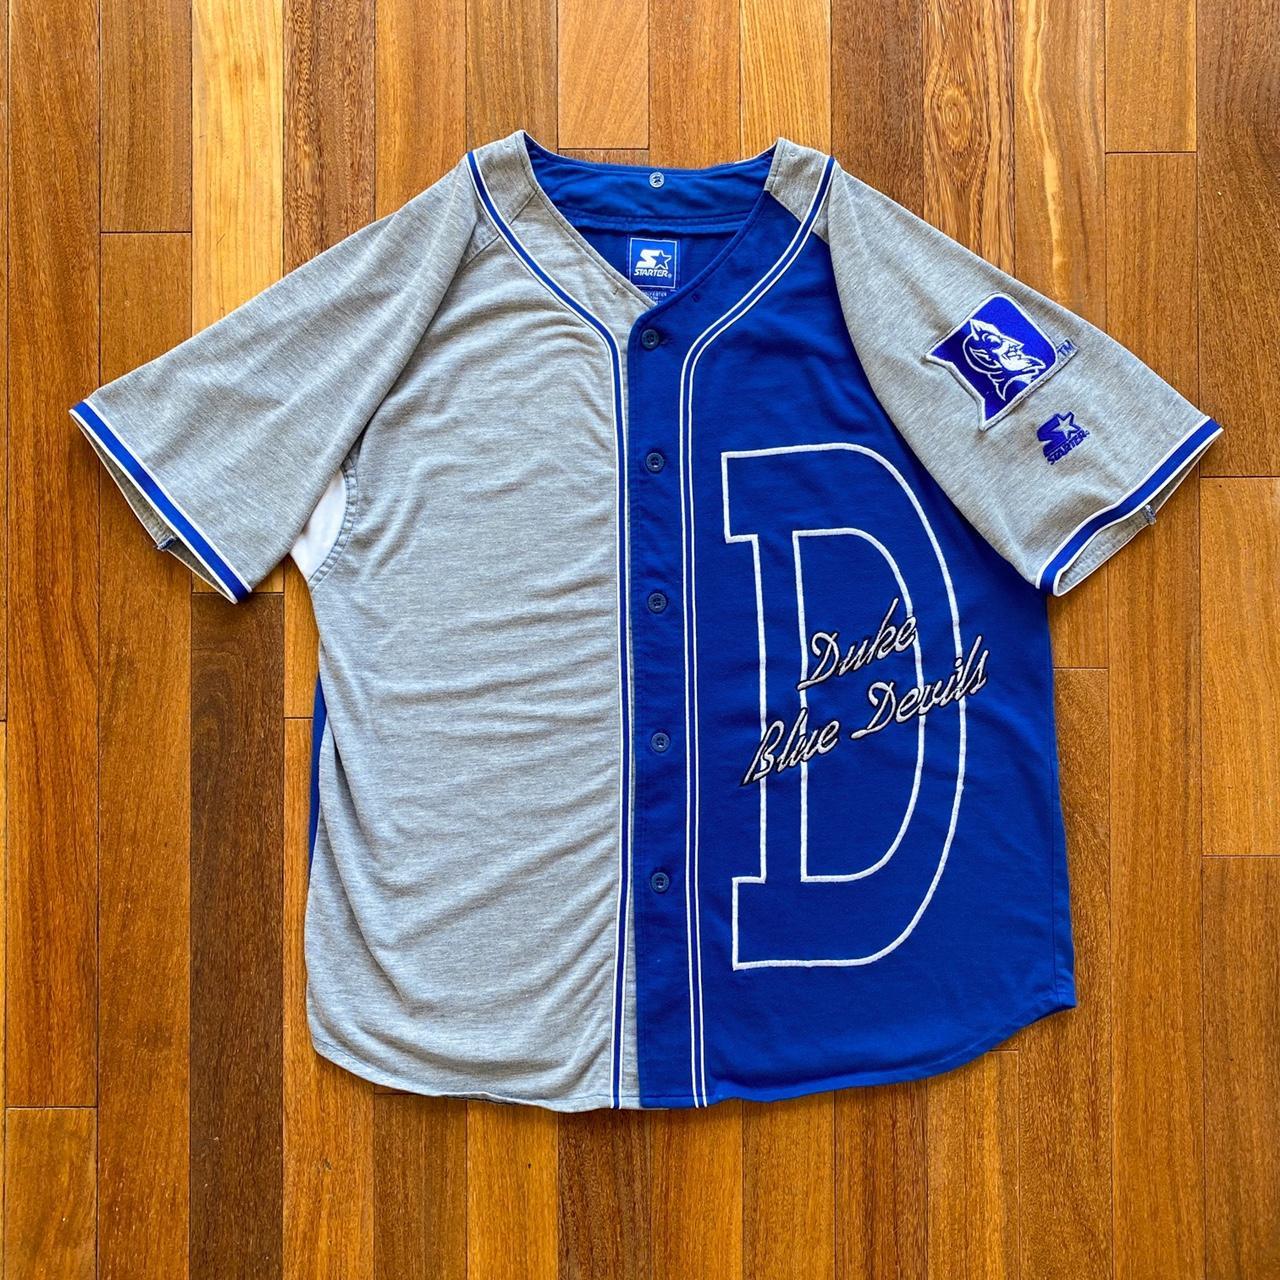 duke blue devils baseball jerseys